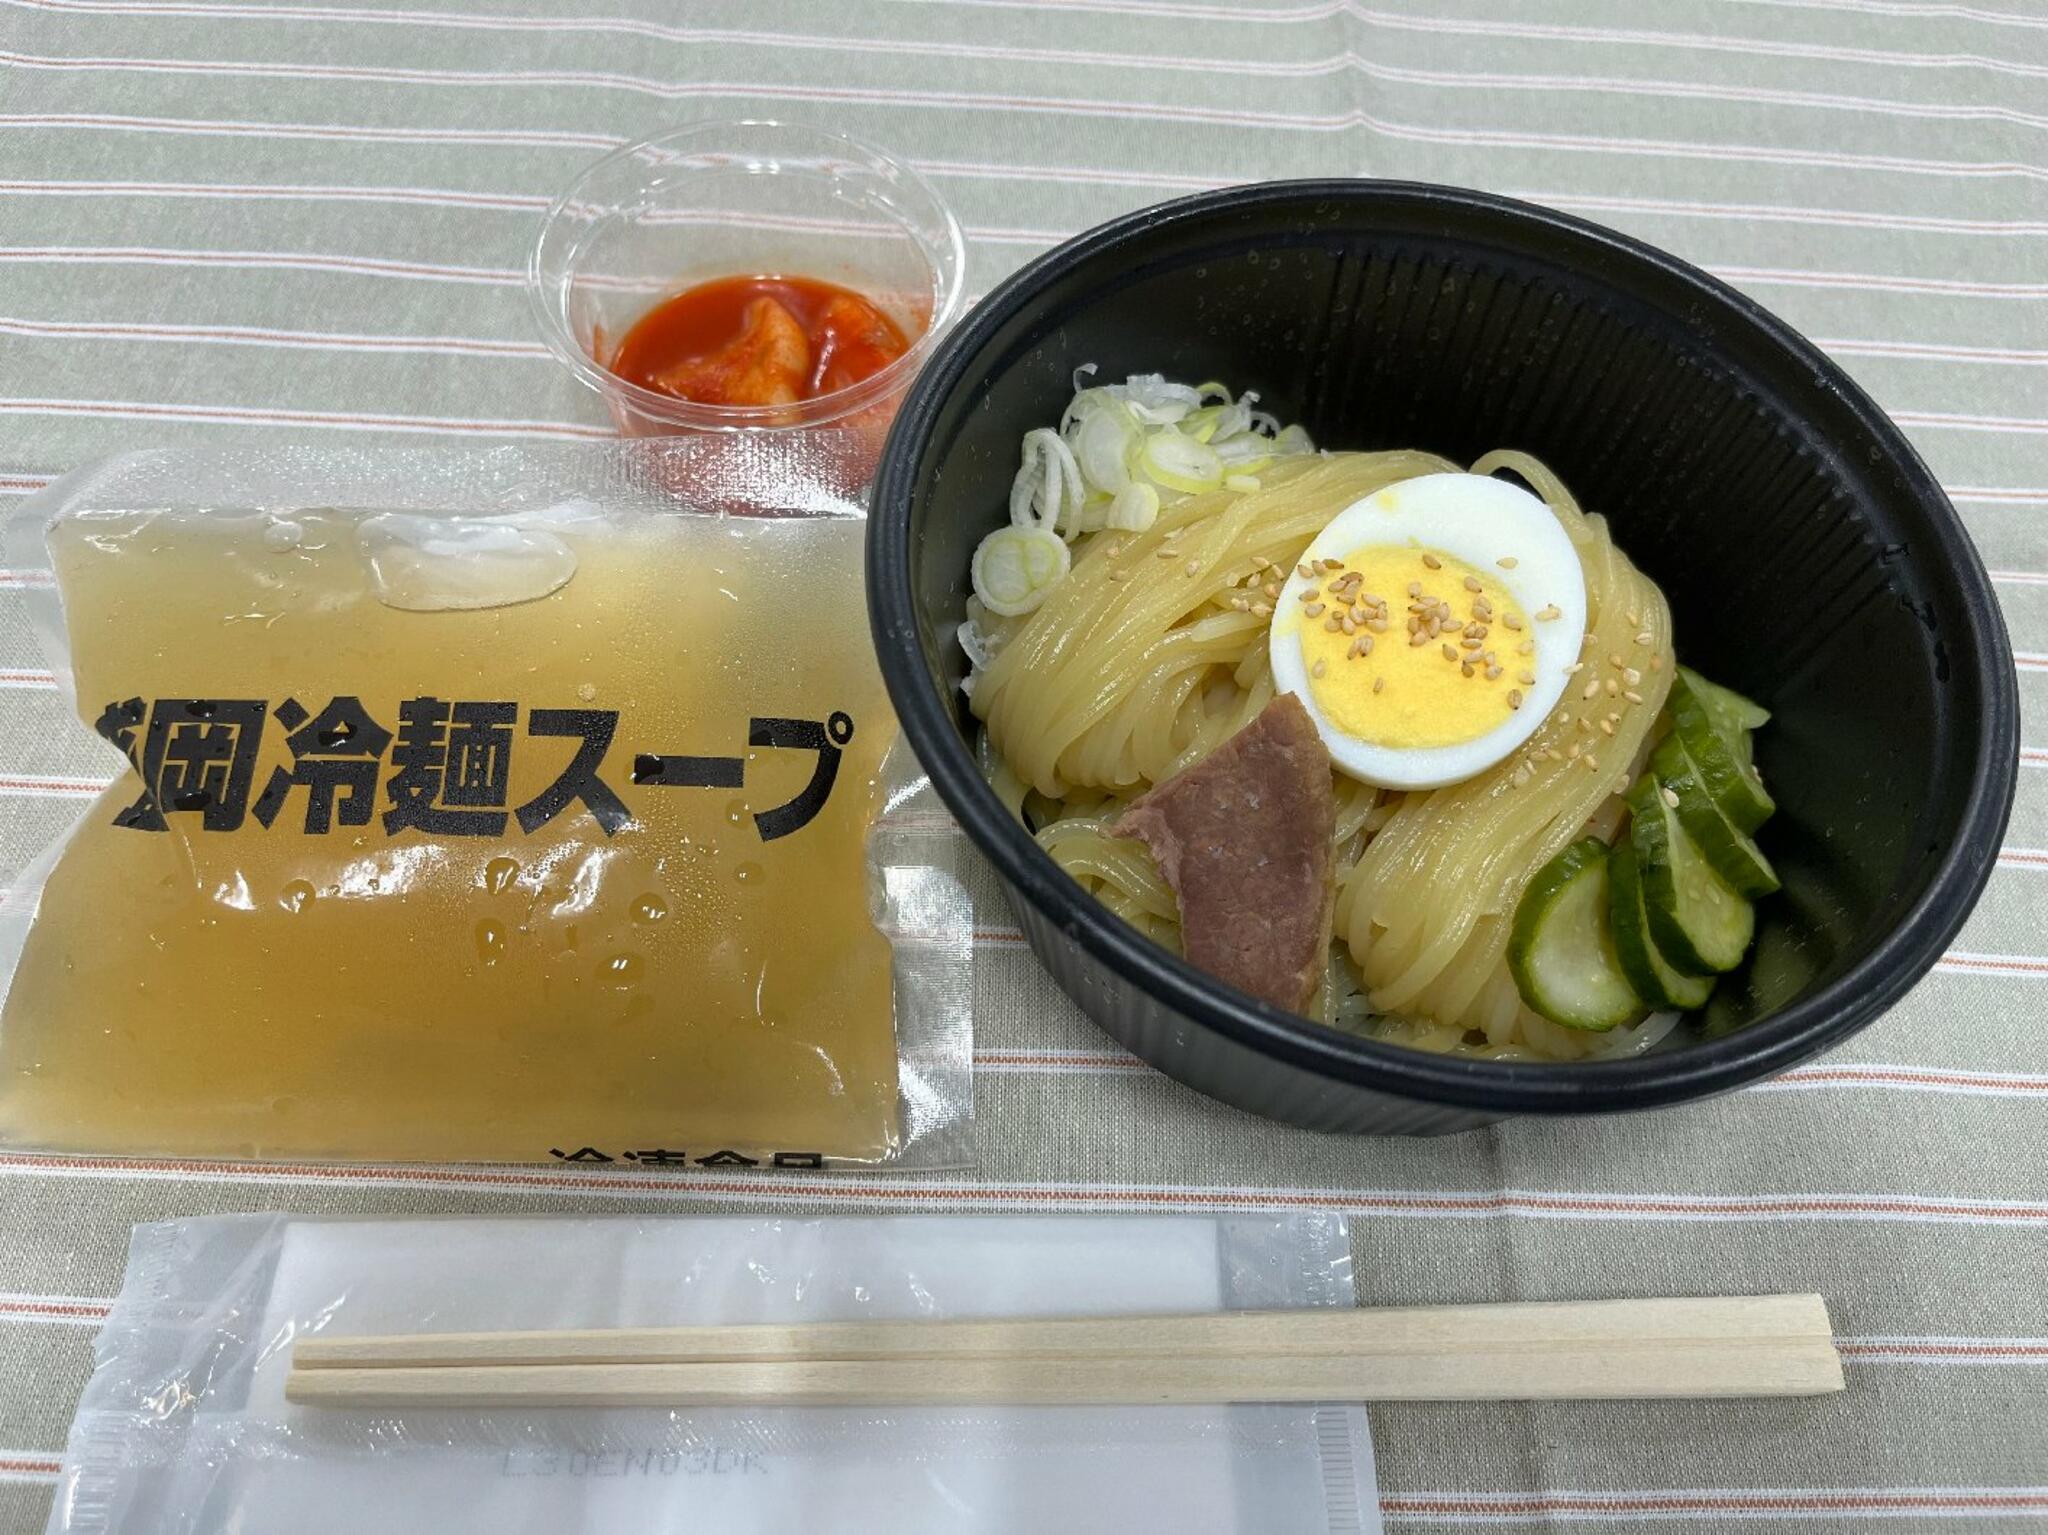 カルビ丼と冷麺 やま丼 ザ・モール仙台長町店からのお知らせ(冷麺のテイクアウトできます♪)に関する写真